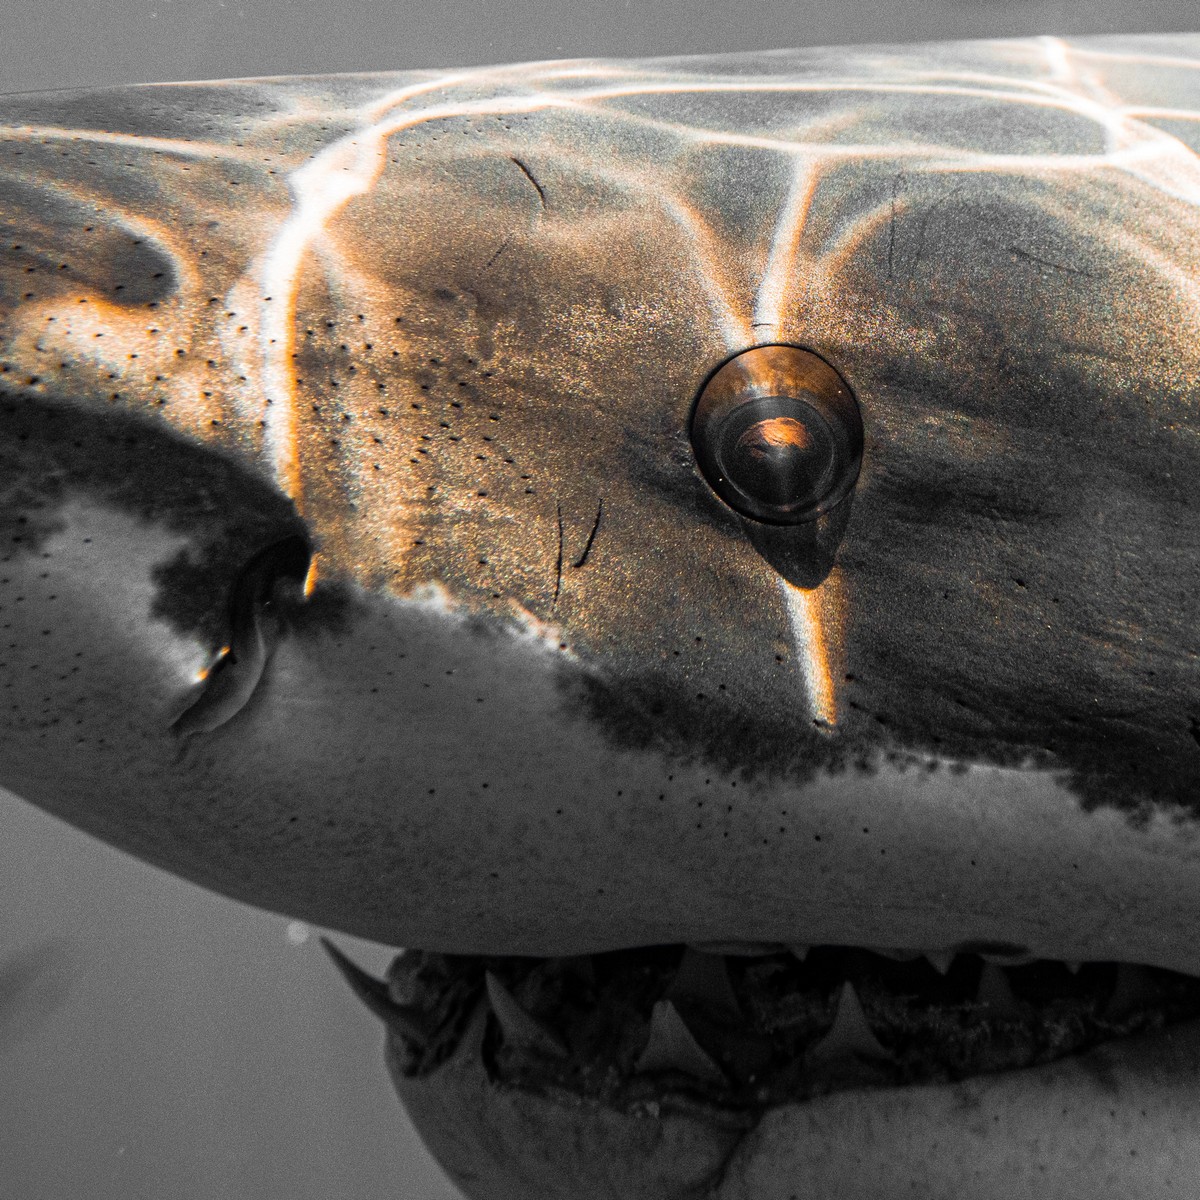 Британский фотограф делает невероятные снимки акул